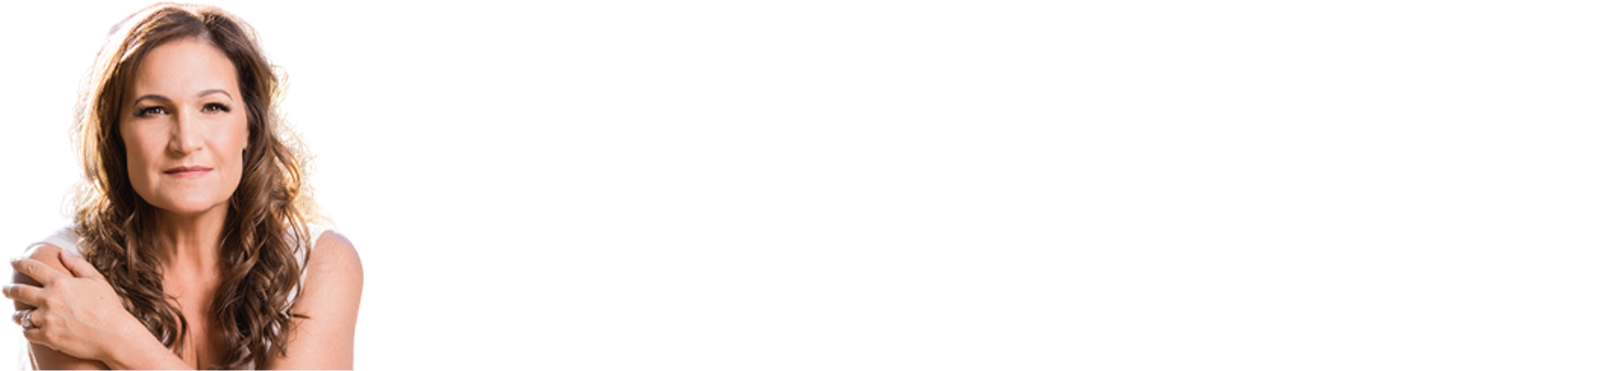 the healing shop